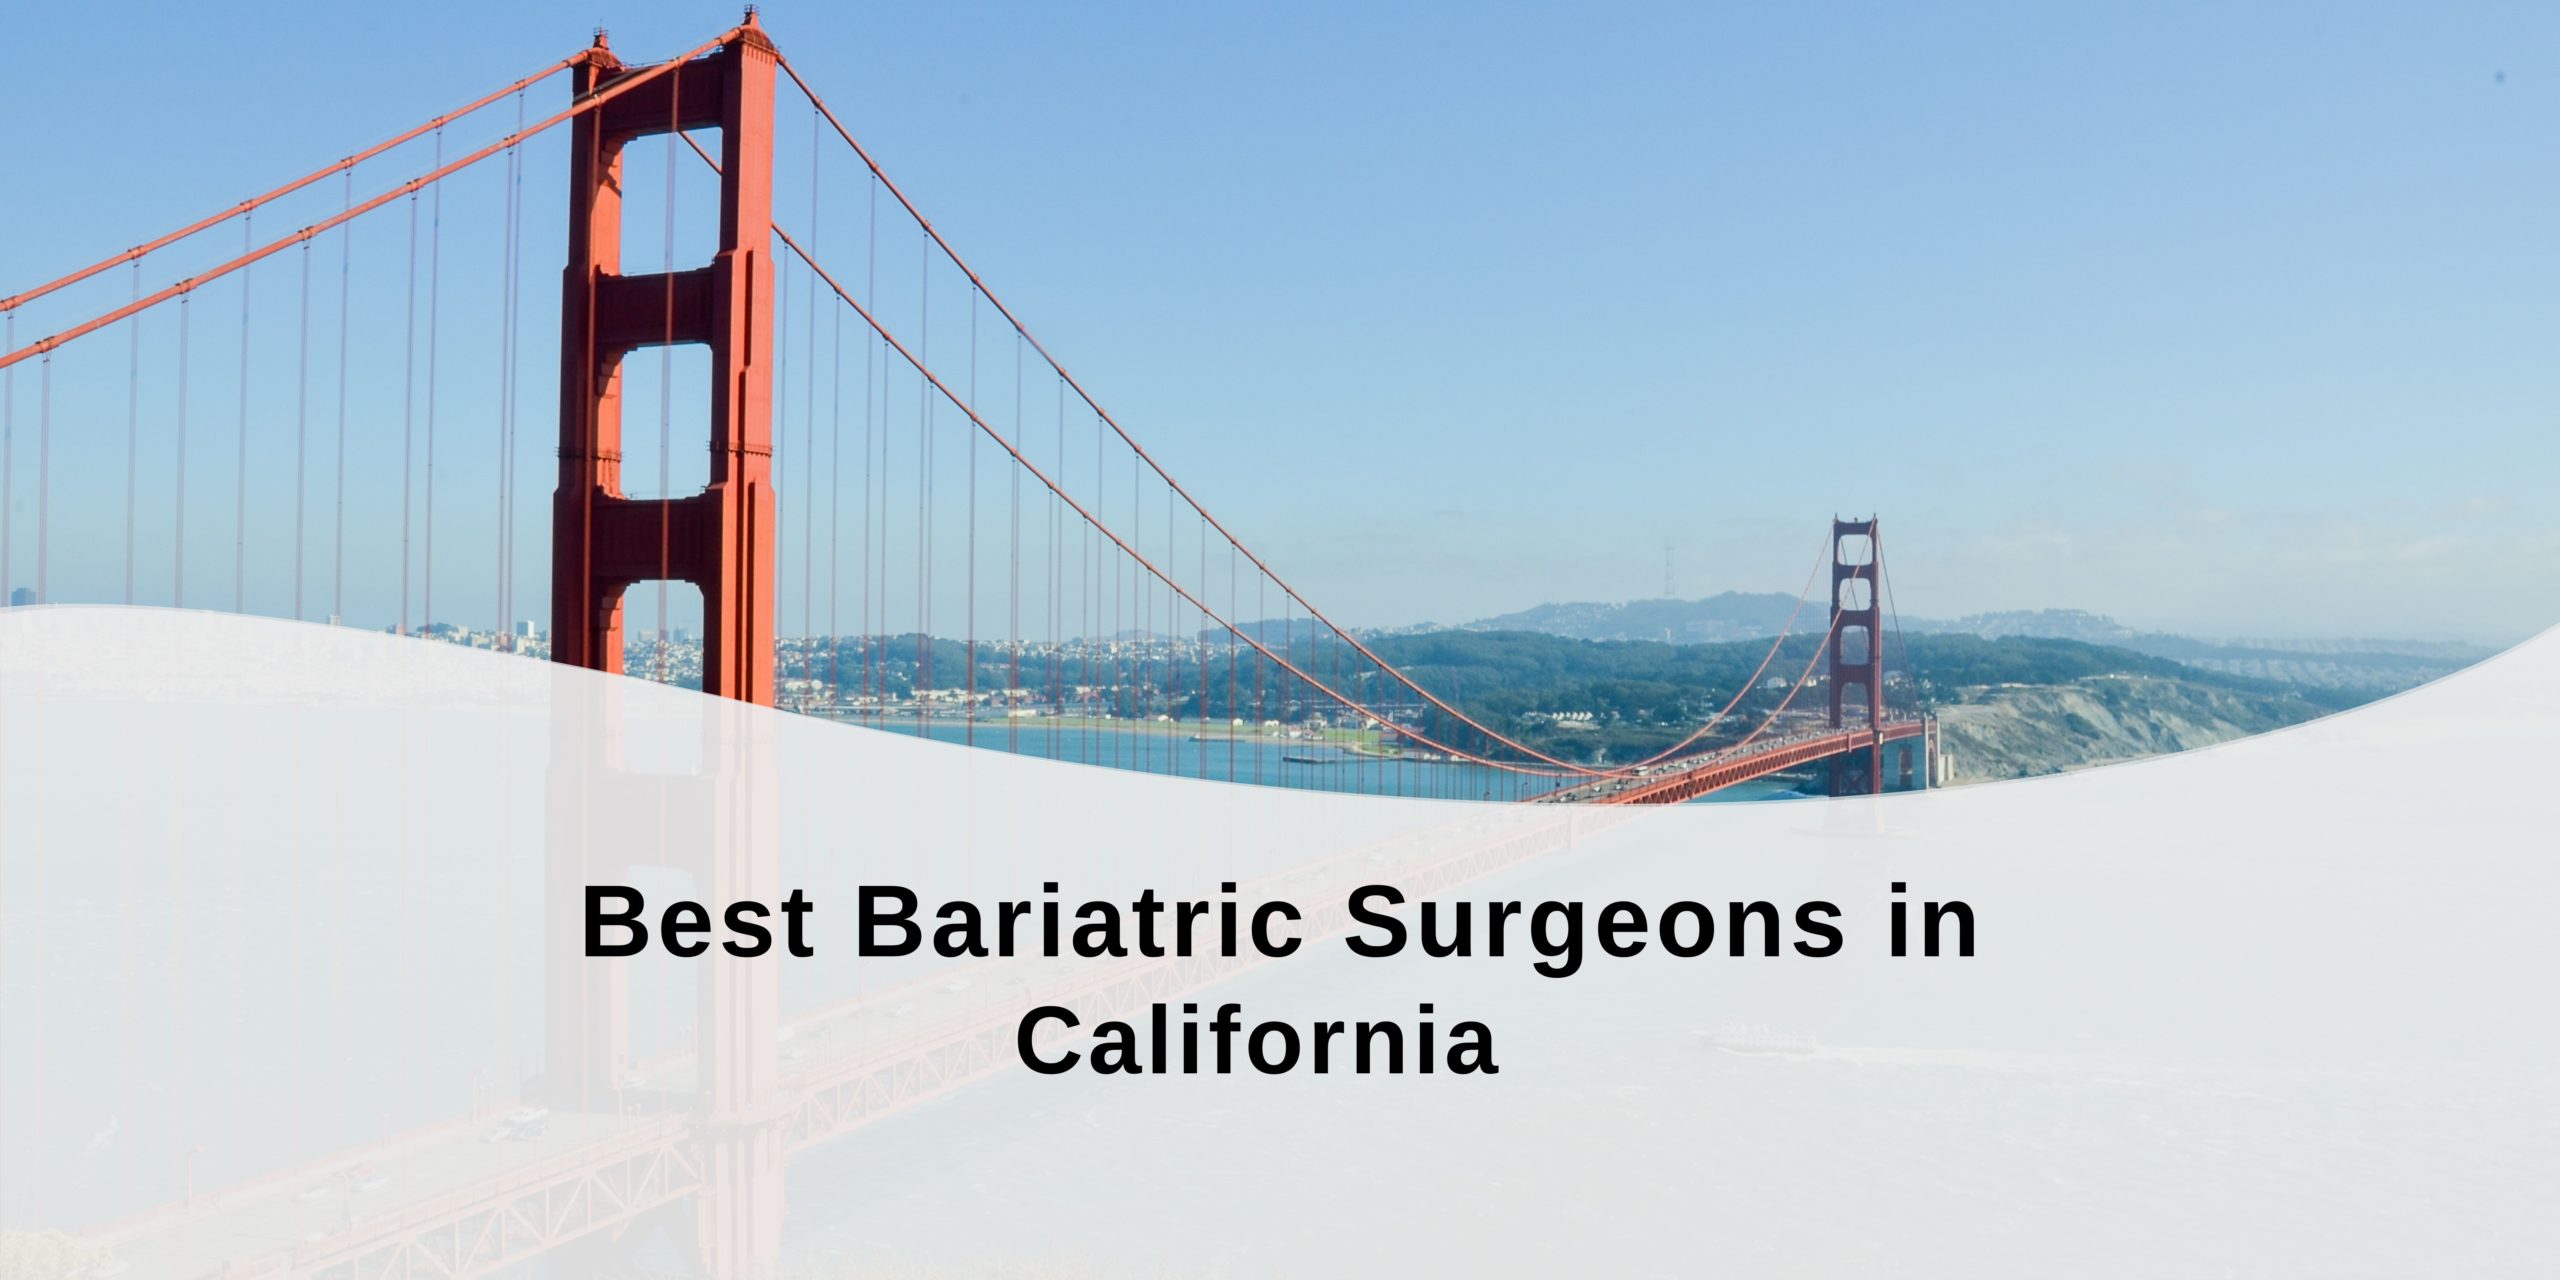 Best Bariatric Surgeons in California